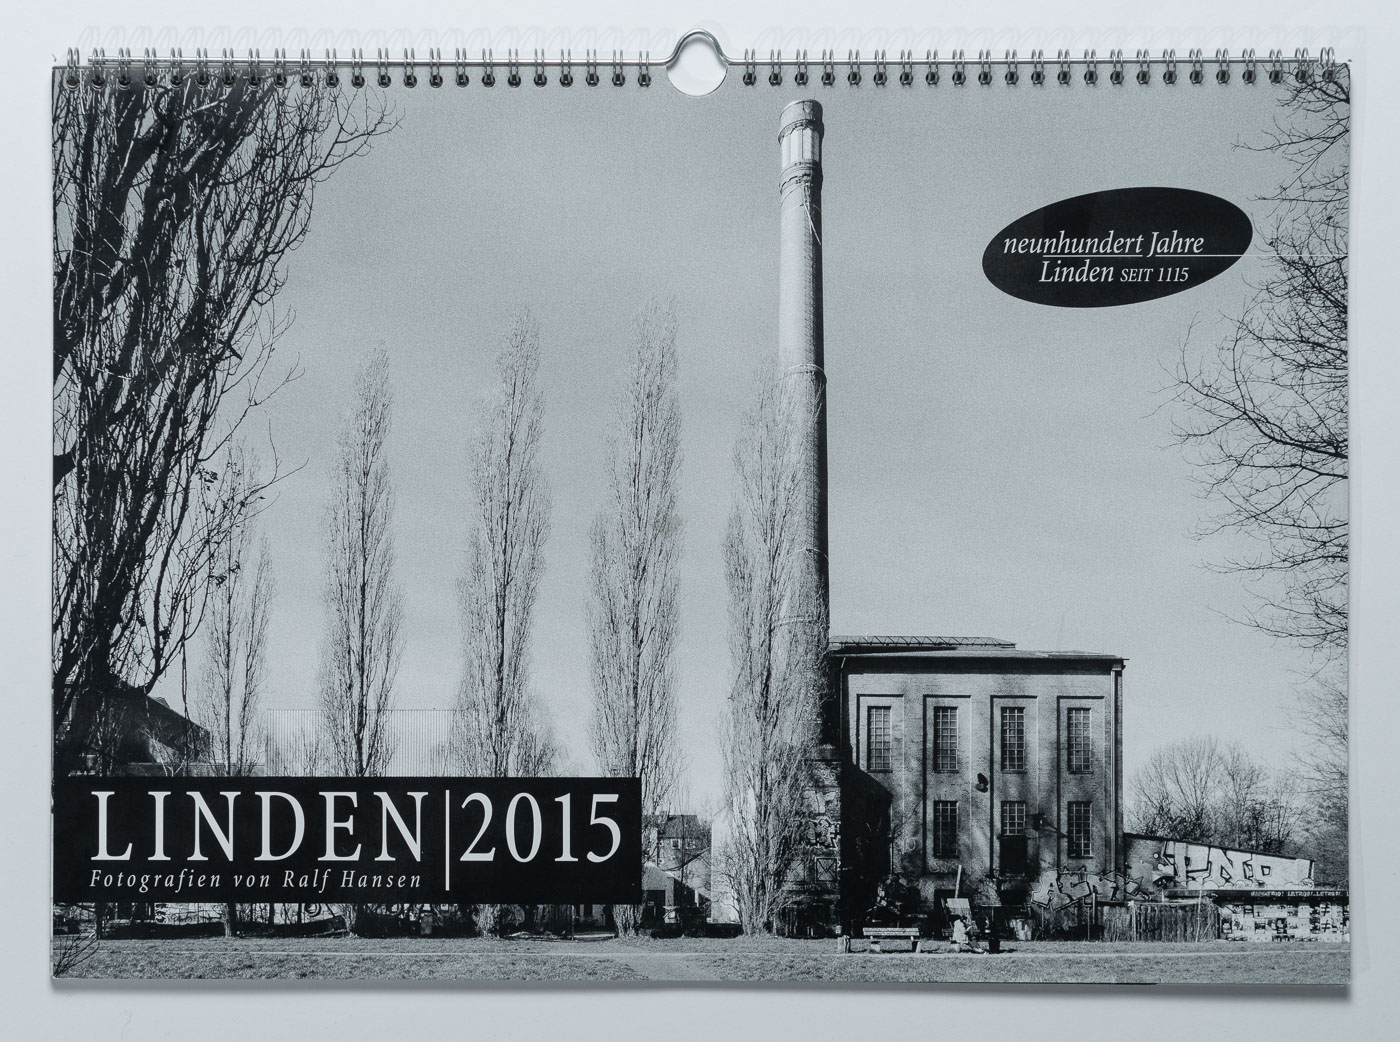 Lindenkalender LINDEN 2015